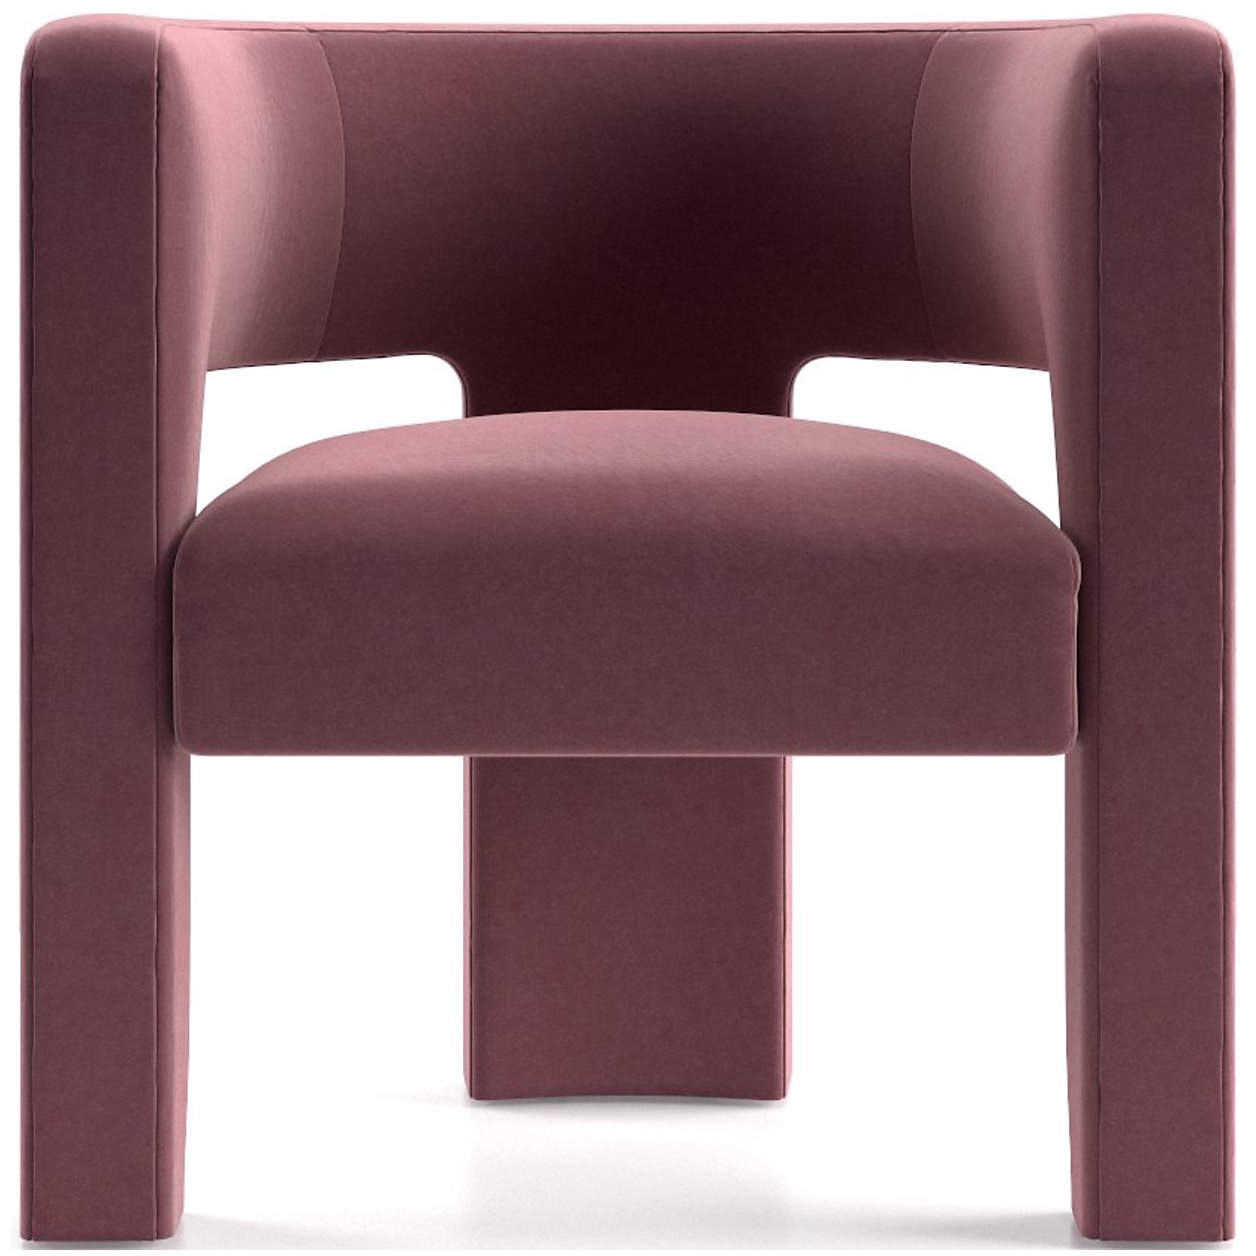 sculpt chair - Image 0